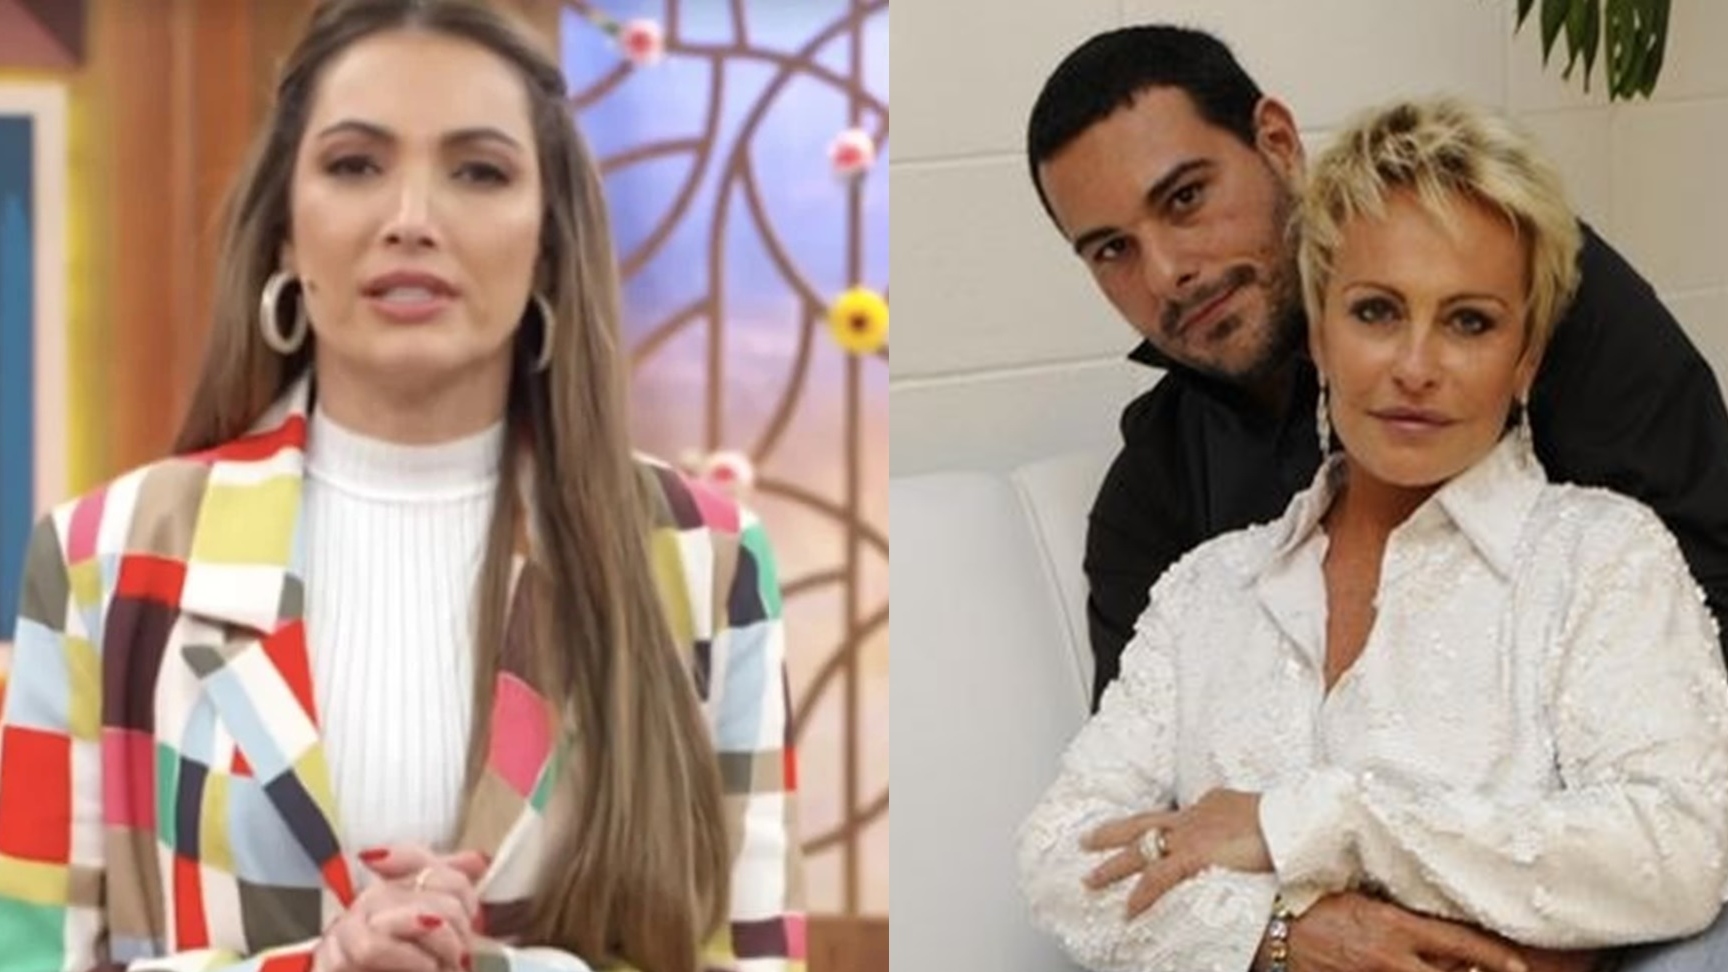 Patrícia Poeta estaria namorando com ex-marido de Ana Maria Braga, diz colunista